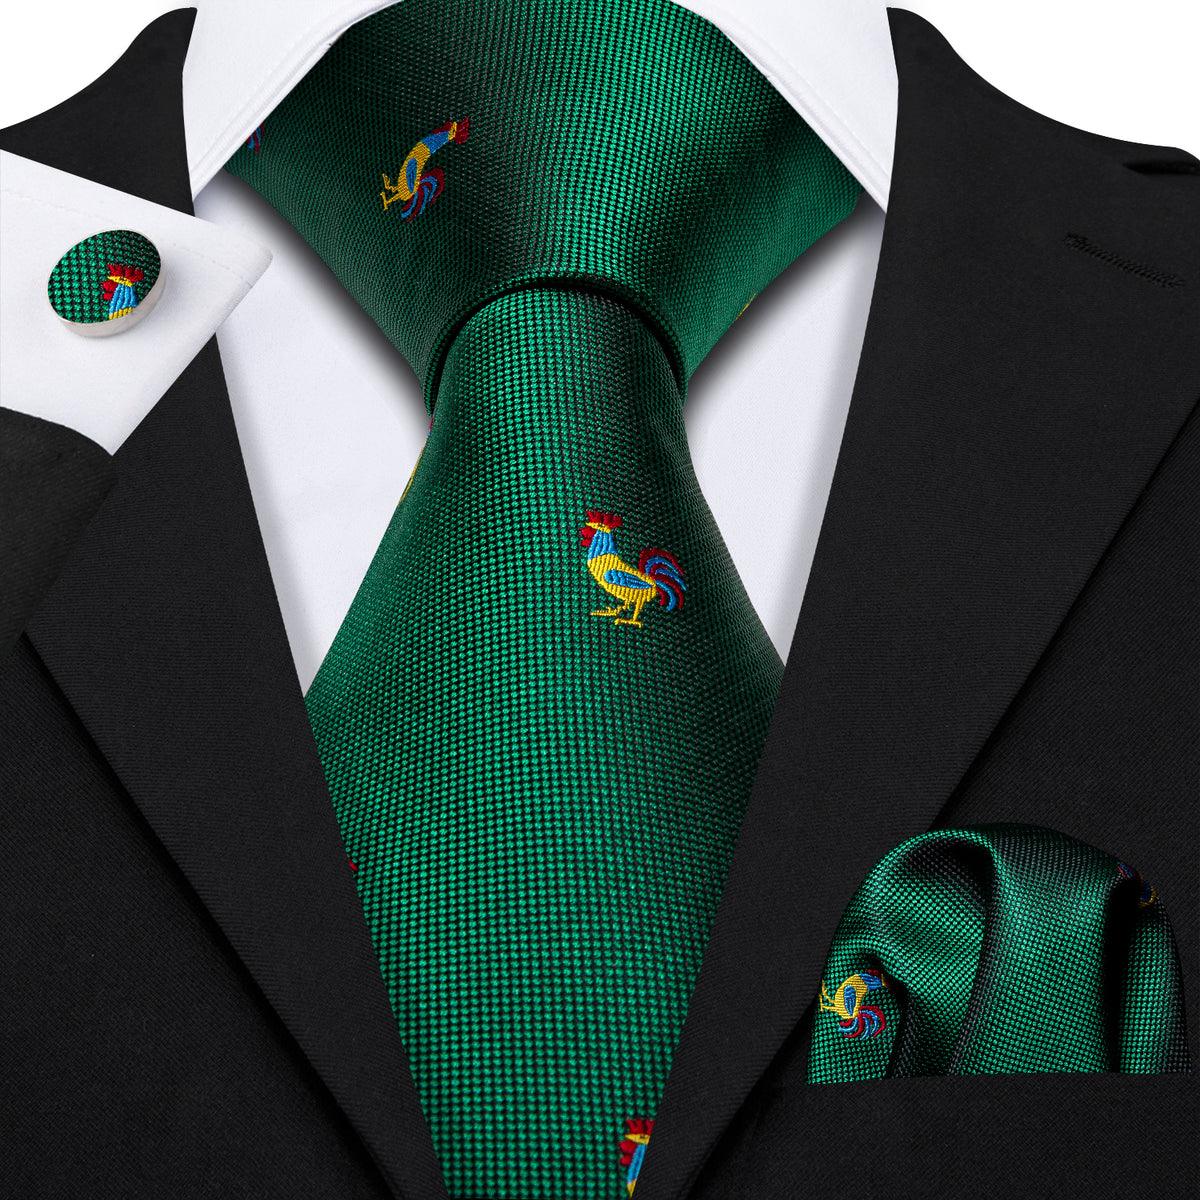 Rooster Green Silk Tie Pocket Square Cufflink Set - STYLETIE